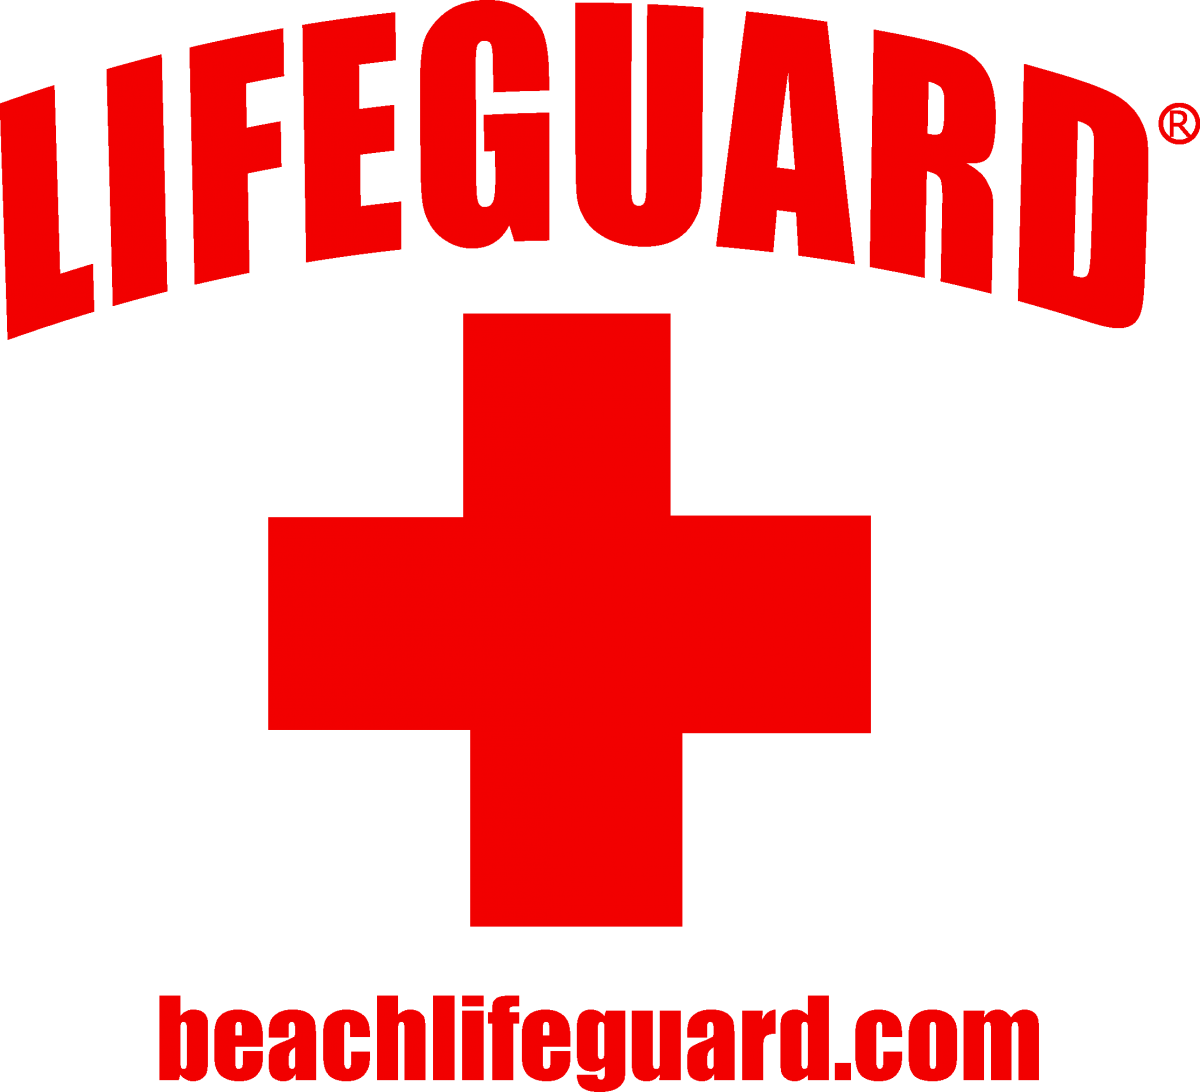 Logos . Lifeguard clipart beach lifeguard